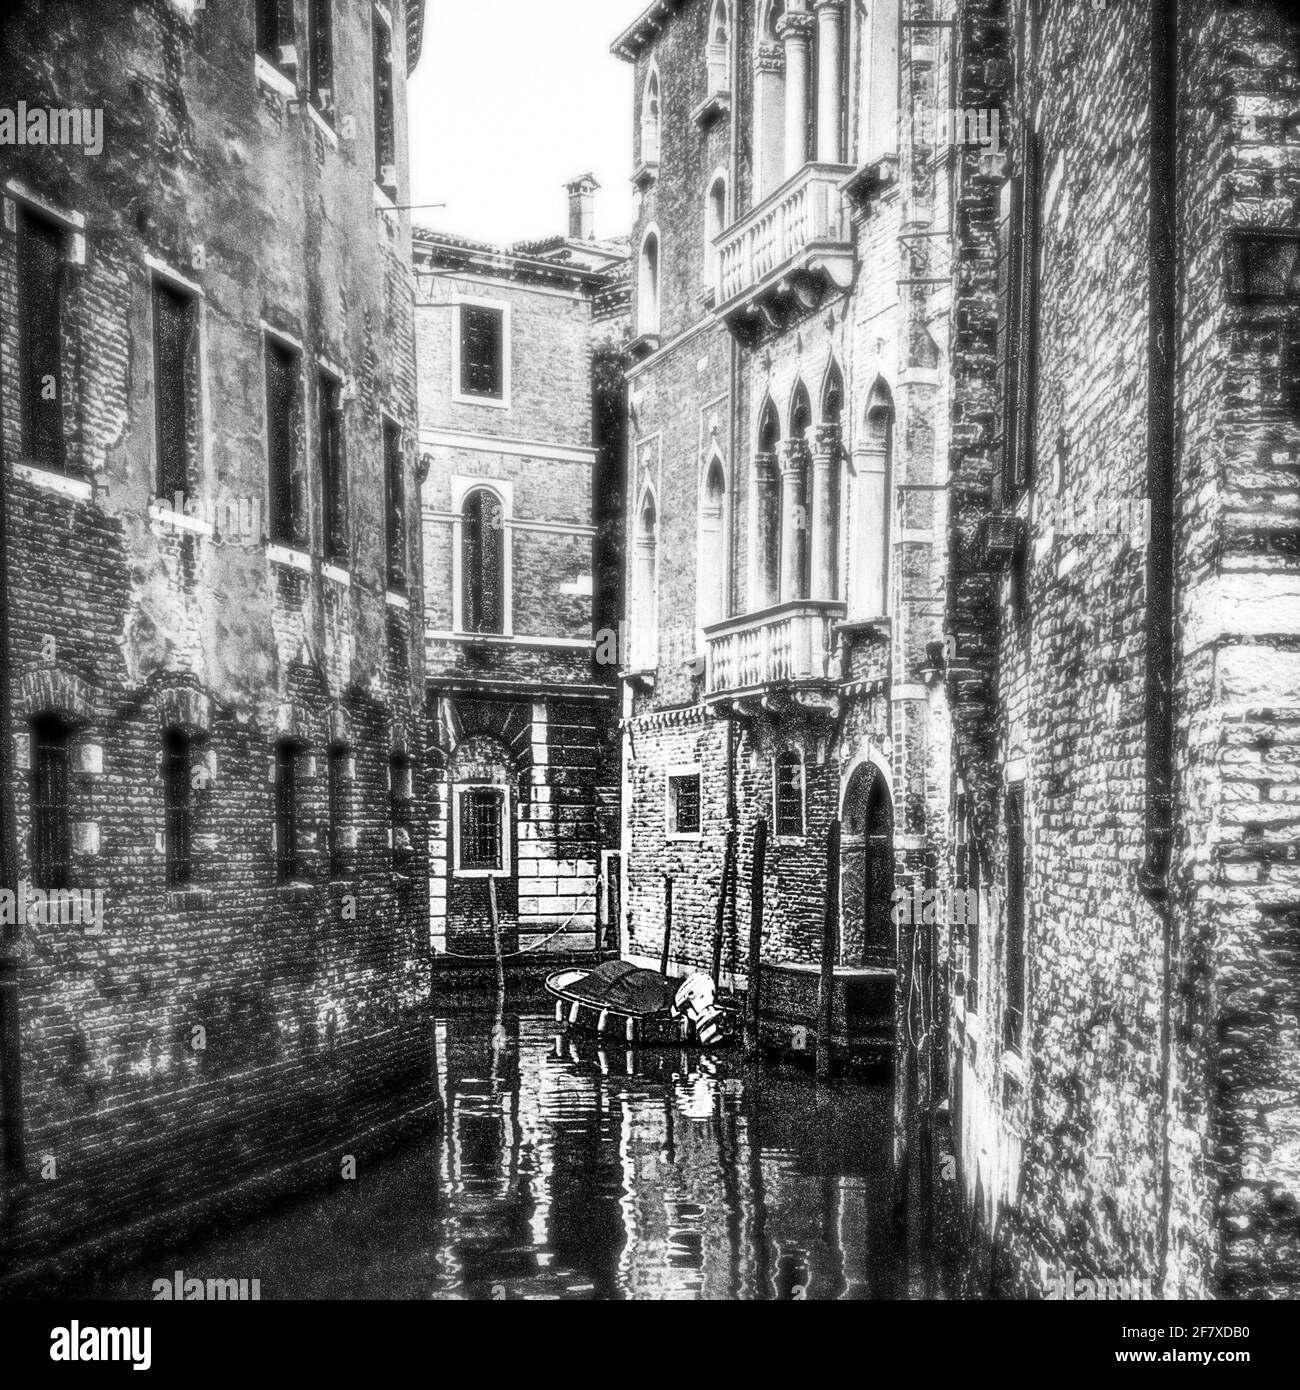 Vue en noir et blanc sur un petit canal de Venise un bateau est en train d'amarrer Banque D'Images